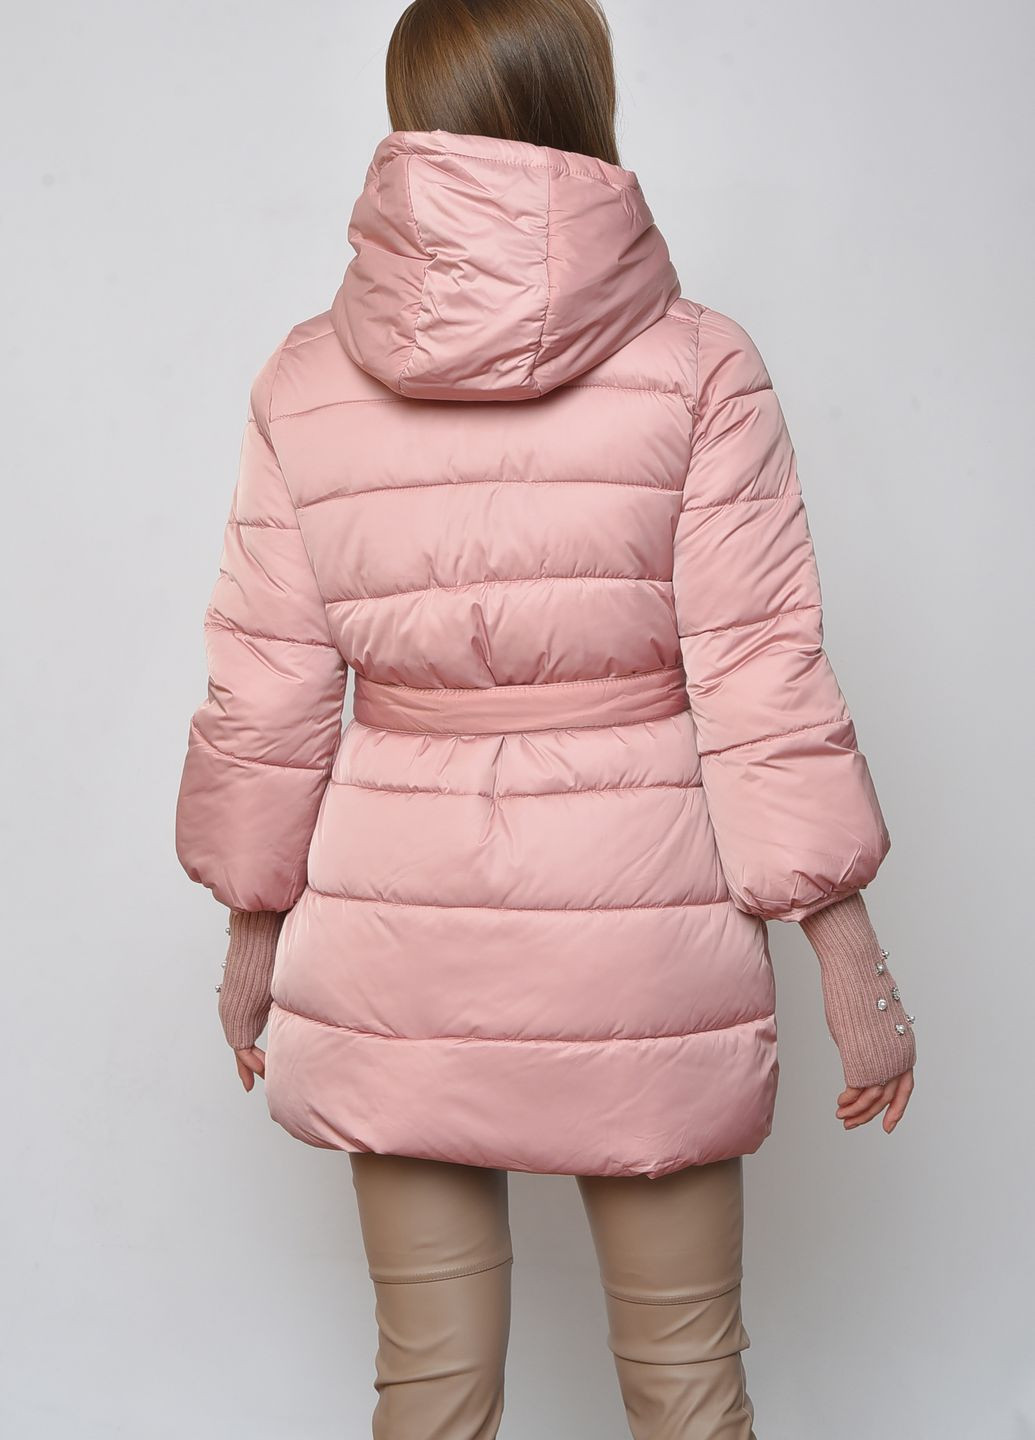 Розовая демисезонная куртка женская розового цвета Let's Shop